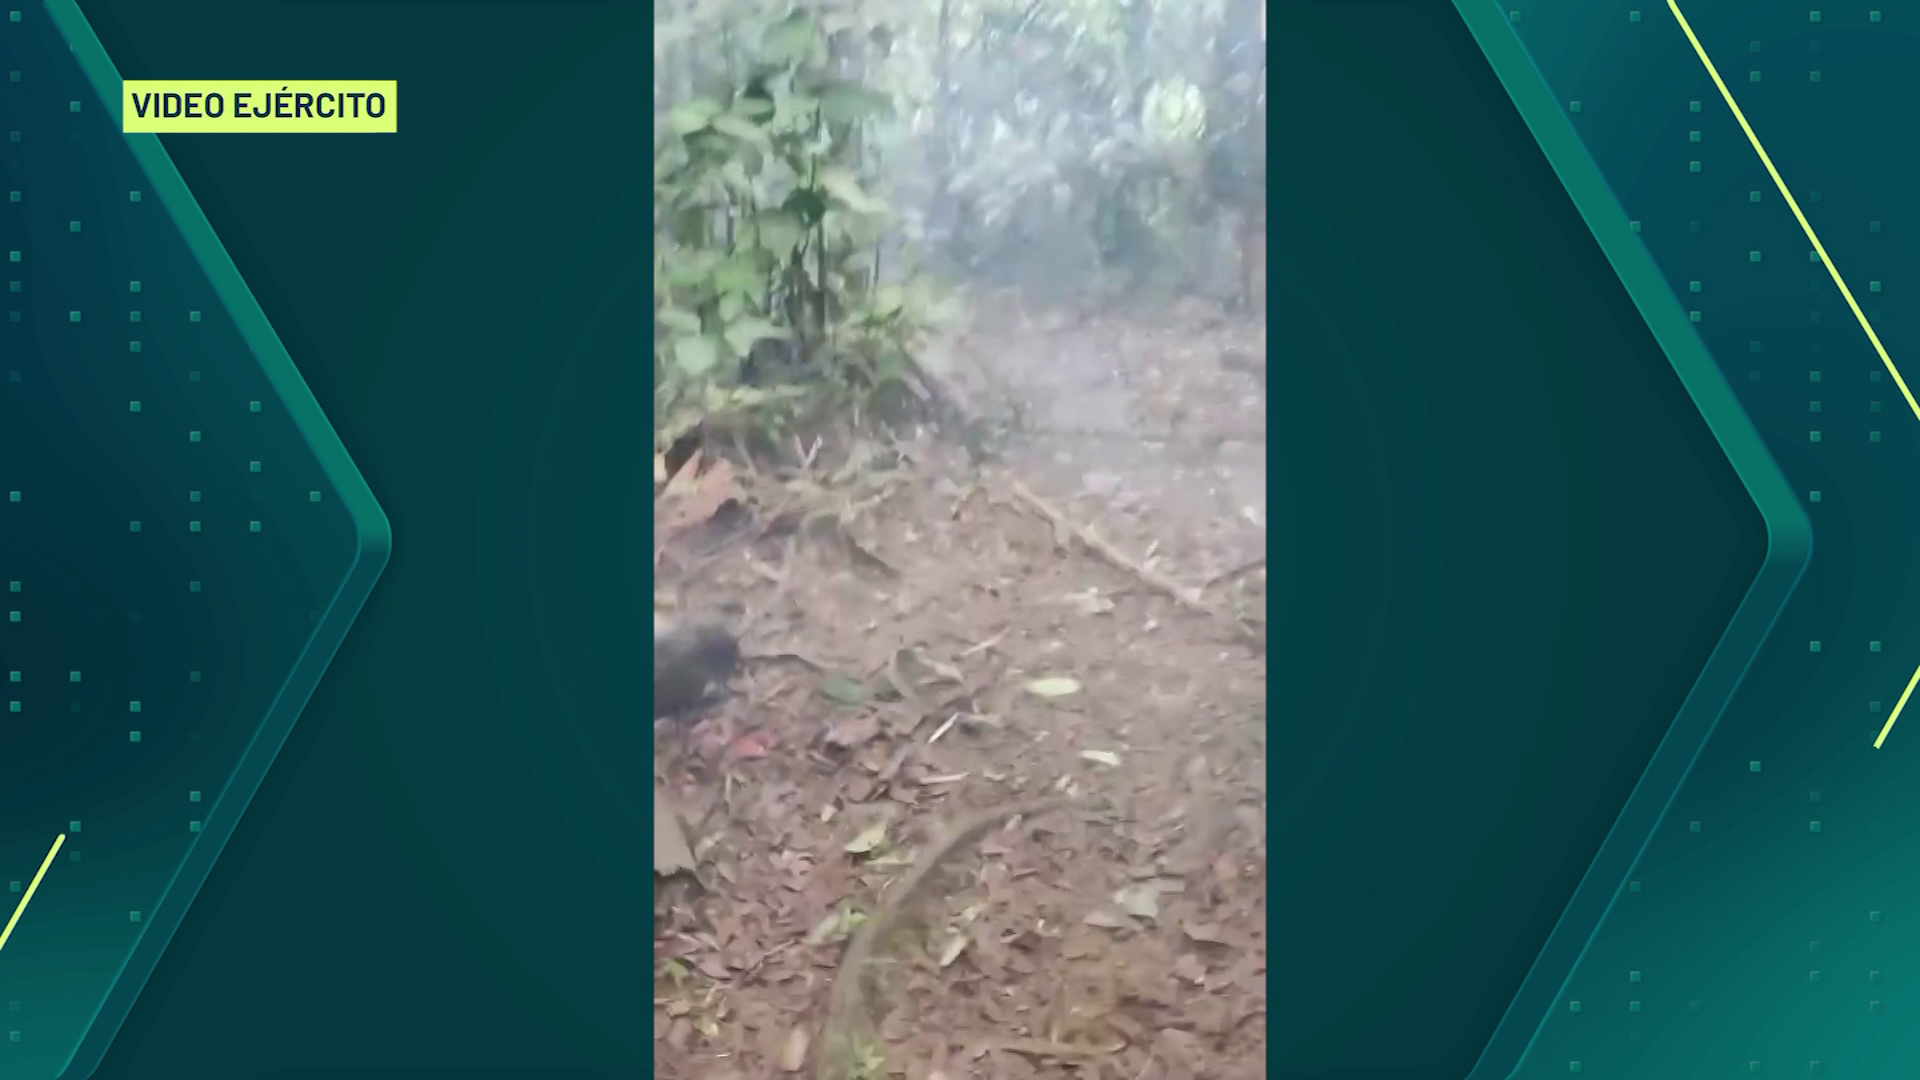 17 minas antipersonal han sido desactivadas en Antioquia